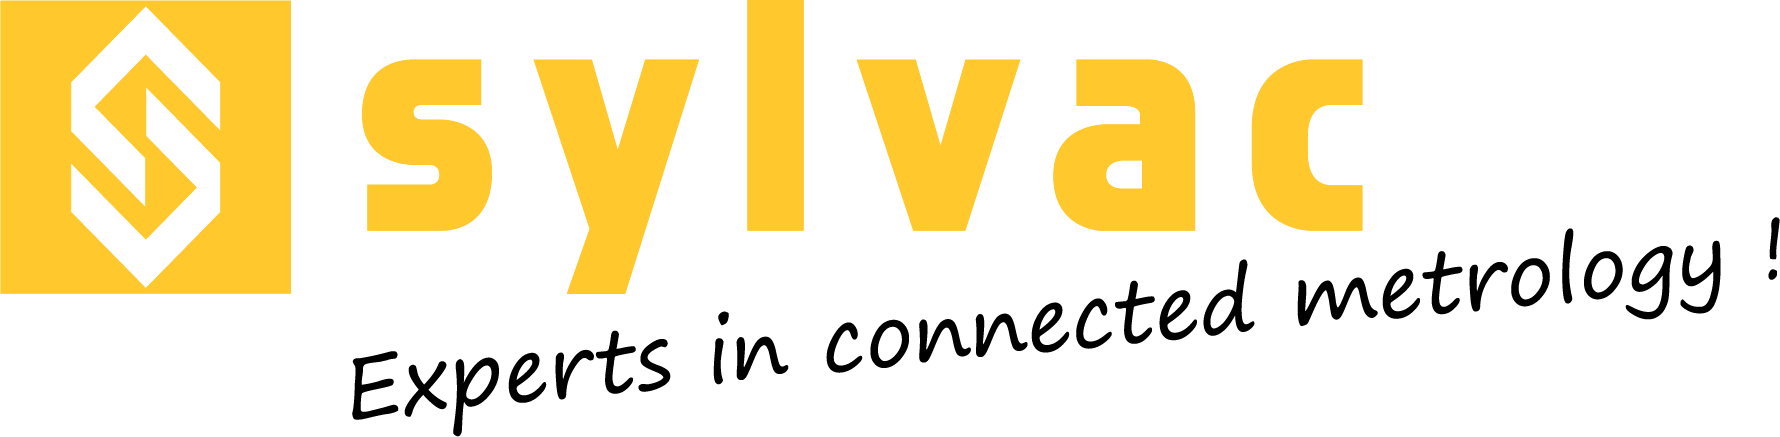 Logo sylvac Experts metrology